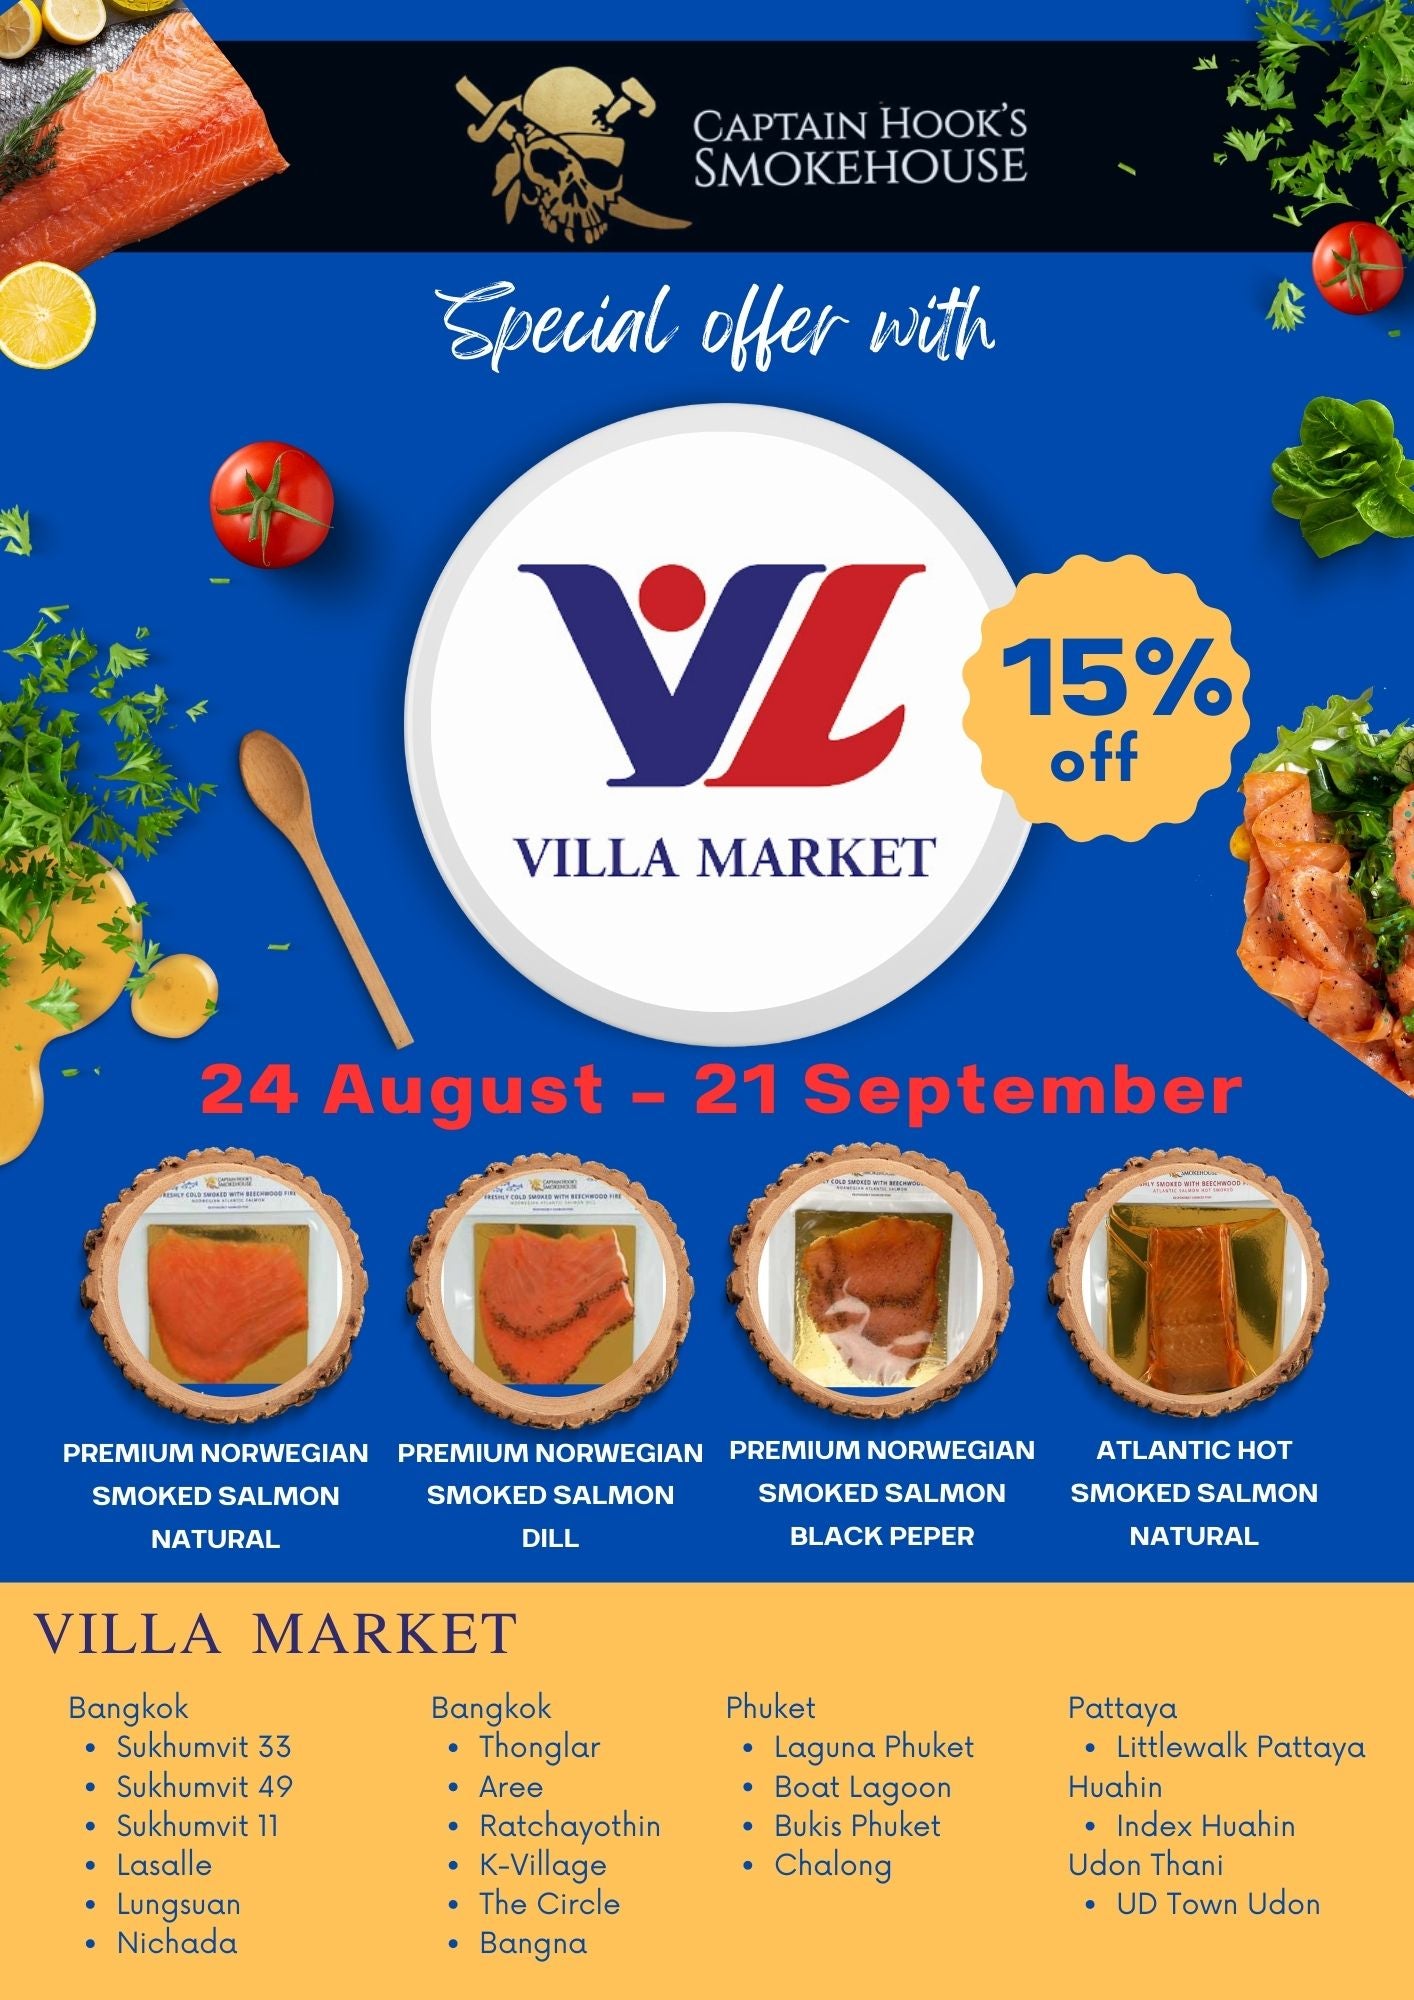 Special offer 15% off at Villa Market